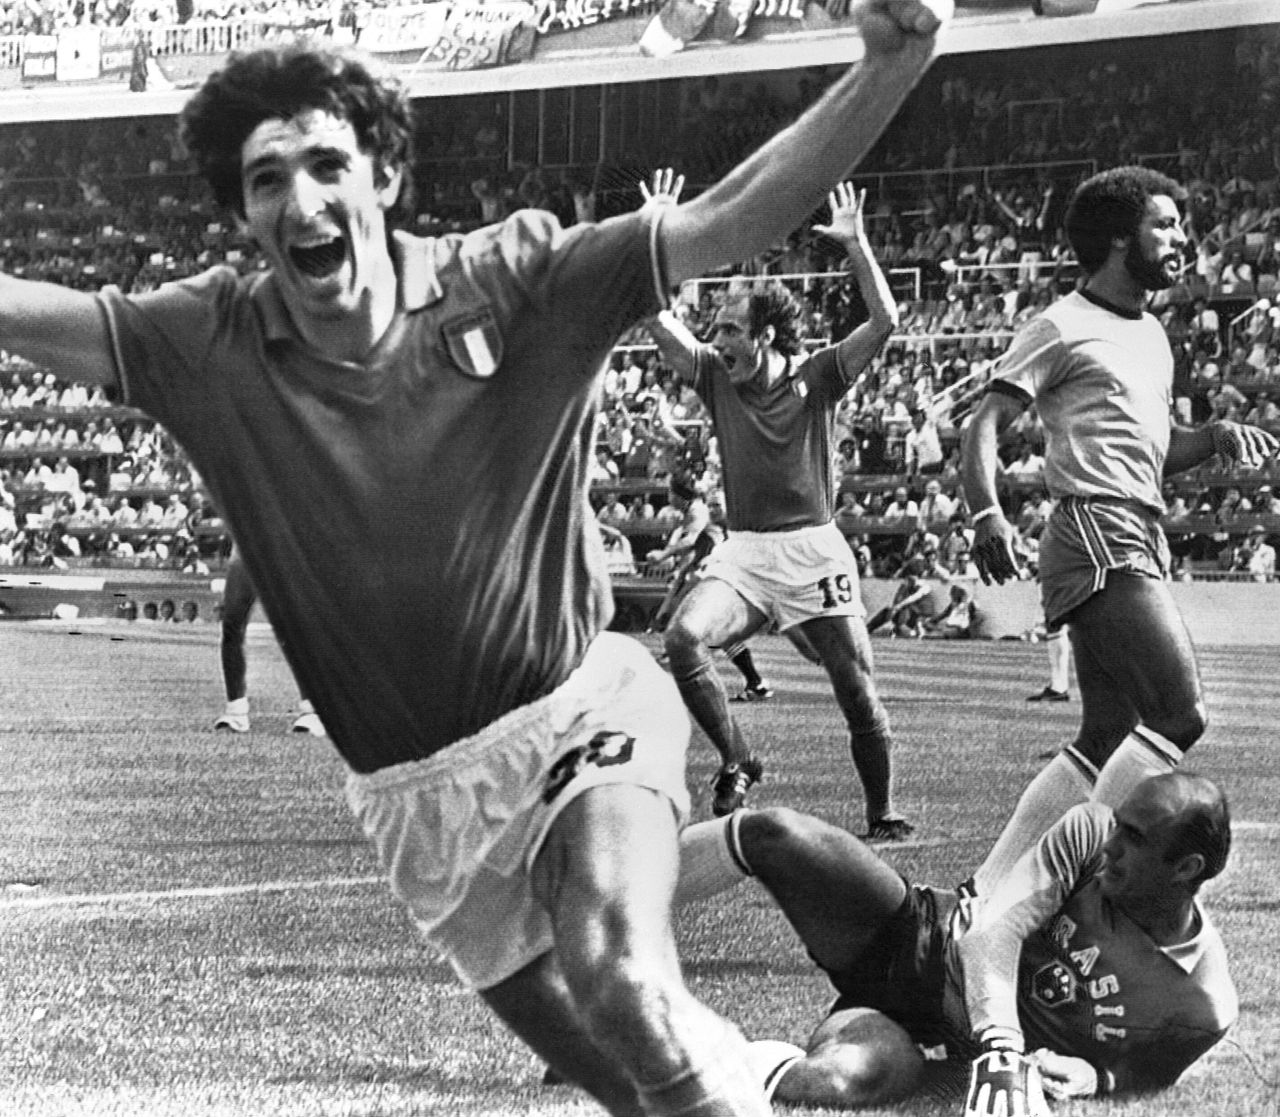 Ο Πάολο Ρόσι της Ιταλίας πανηγυρίζει το δεύτερο γκολ κατά της Βραζιλίας, στο γήπεδο Σαριά της Βαρκελώνης στις 5 Ιουλίου 1982. Η Ιταλία νίκησε 3-2 και προκρίθηκε στα ημιτελικά αφήνοντας έξω Αργεντινή και Βραζιλία, κατακτώντας στην συνέχεια το Παγκόσμιο Κύπελλο.Πίσω του διακρίνονται οι Φραντέσκο Γκρατσιάνι με τα χέρια υψωμένα, Ζούνιορ και ο τερματοφύλακας Βαλντίρ Πέρεζ.